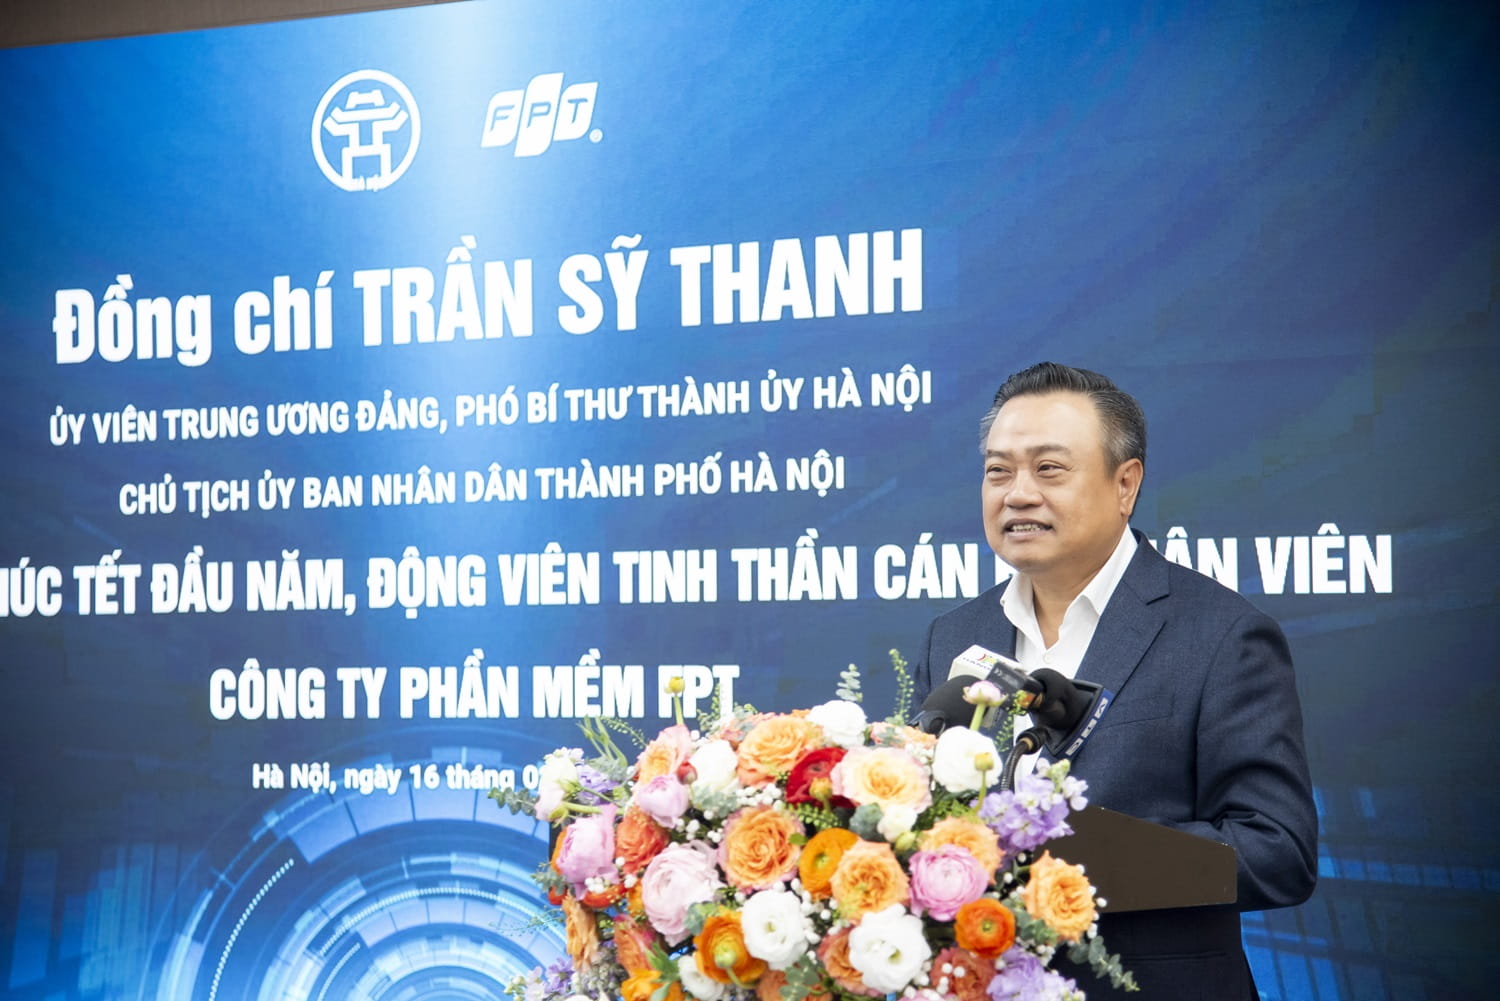 Đồng chí Trần Sỹ Thanh, Ủy viên Trung ương Đảng, Phó Bí thư Thành ủy Hà Nội, Chủ tịch UBND Thành phố Hà Nội thăm và làm việc với FPT